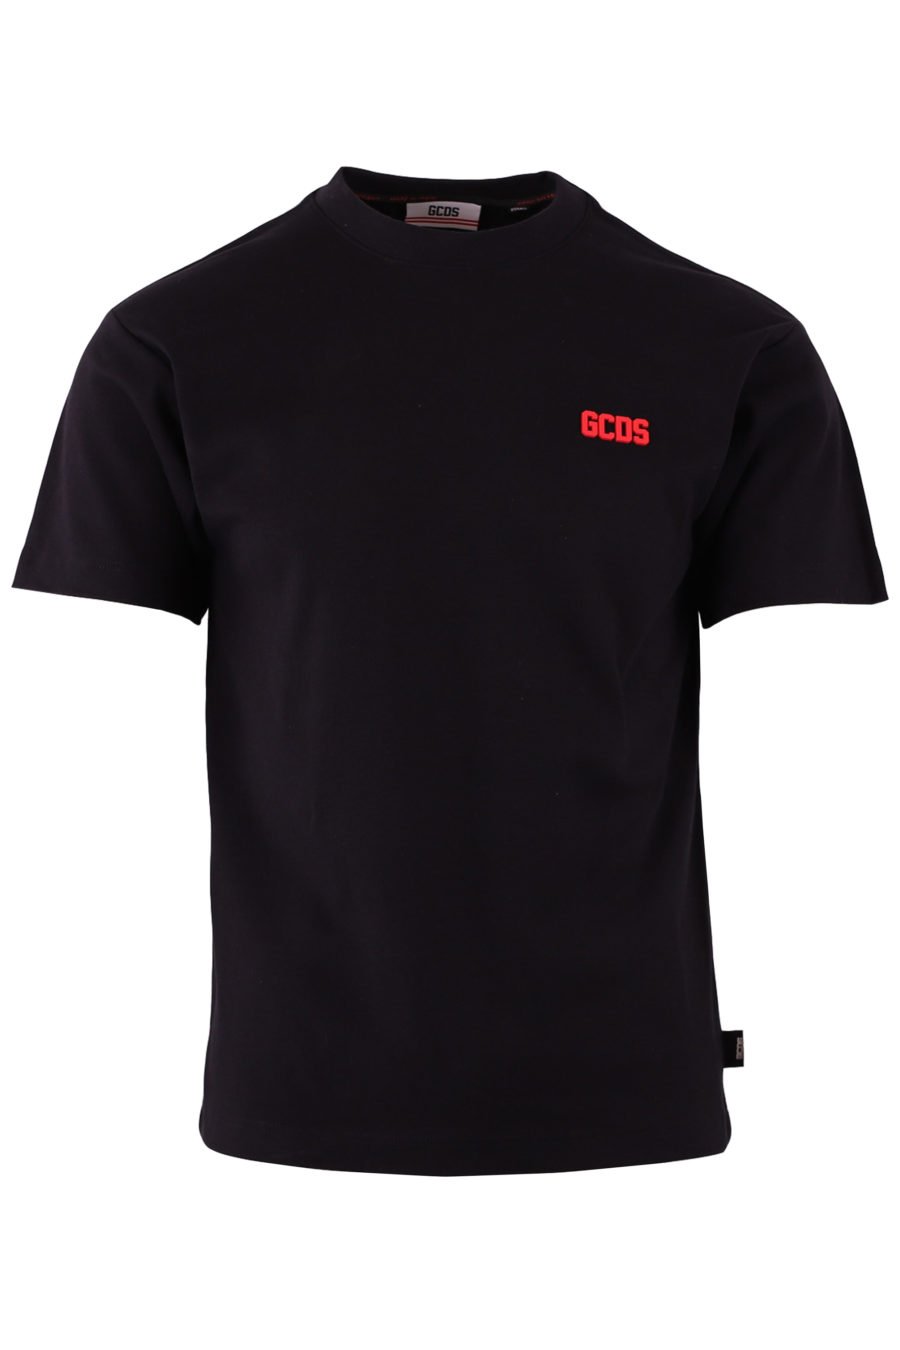 T-shirt preta com pequeno logótipo vermelho - 543367961929d01cca0f1a67b35b61b1de57be27